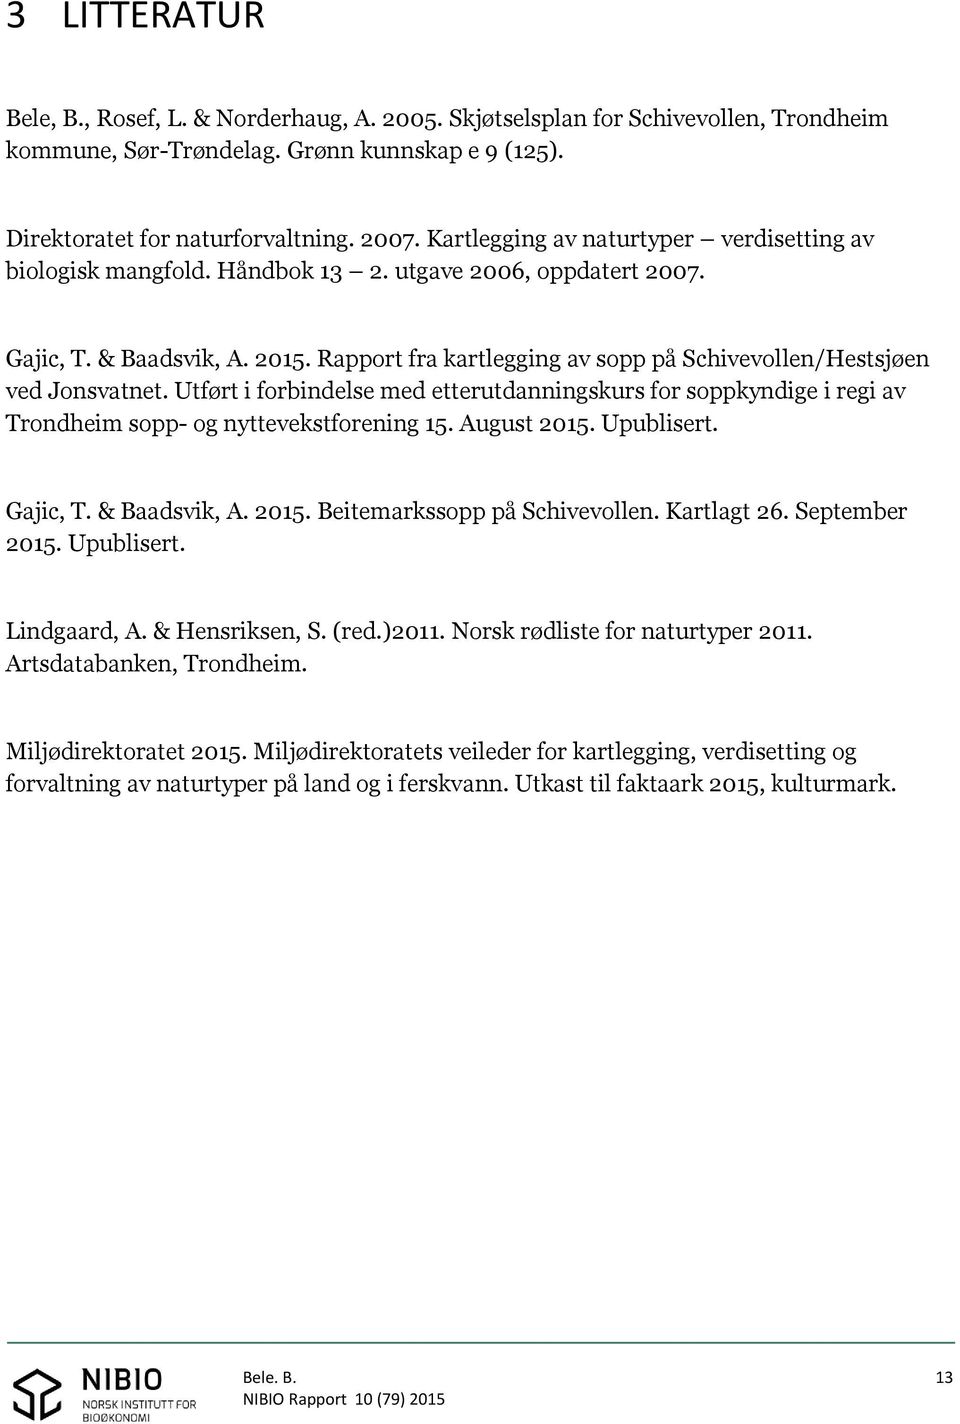 Rapport fra kartlegging av sopp på Schivevollen/Hestsjøen ved Jonsvatnet. Utført i forbindelse med etterutdanningskurs for soppkyndige i regi av Trondheim sopp- og nyttevekstforening 15. August 2015.